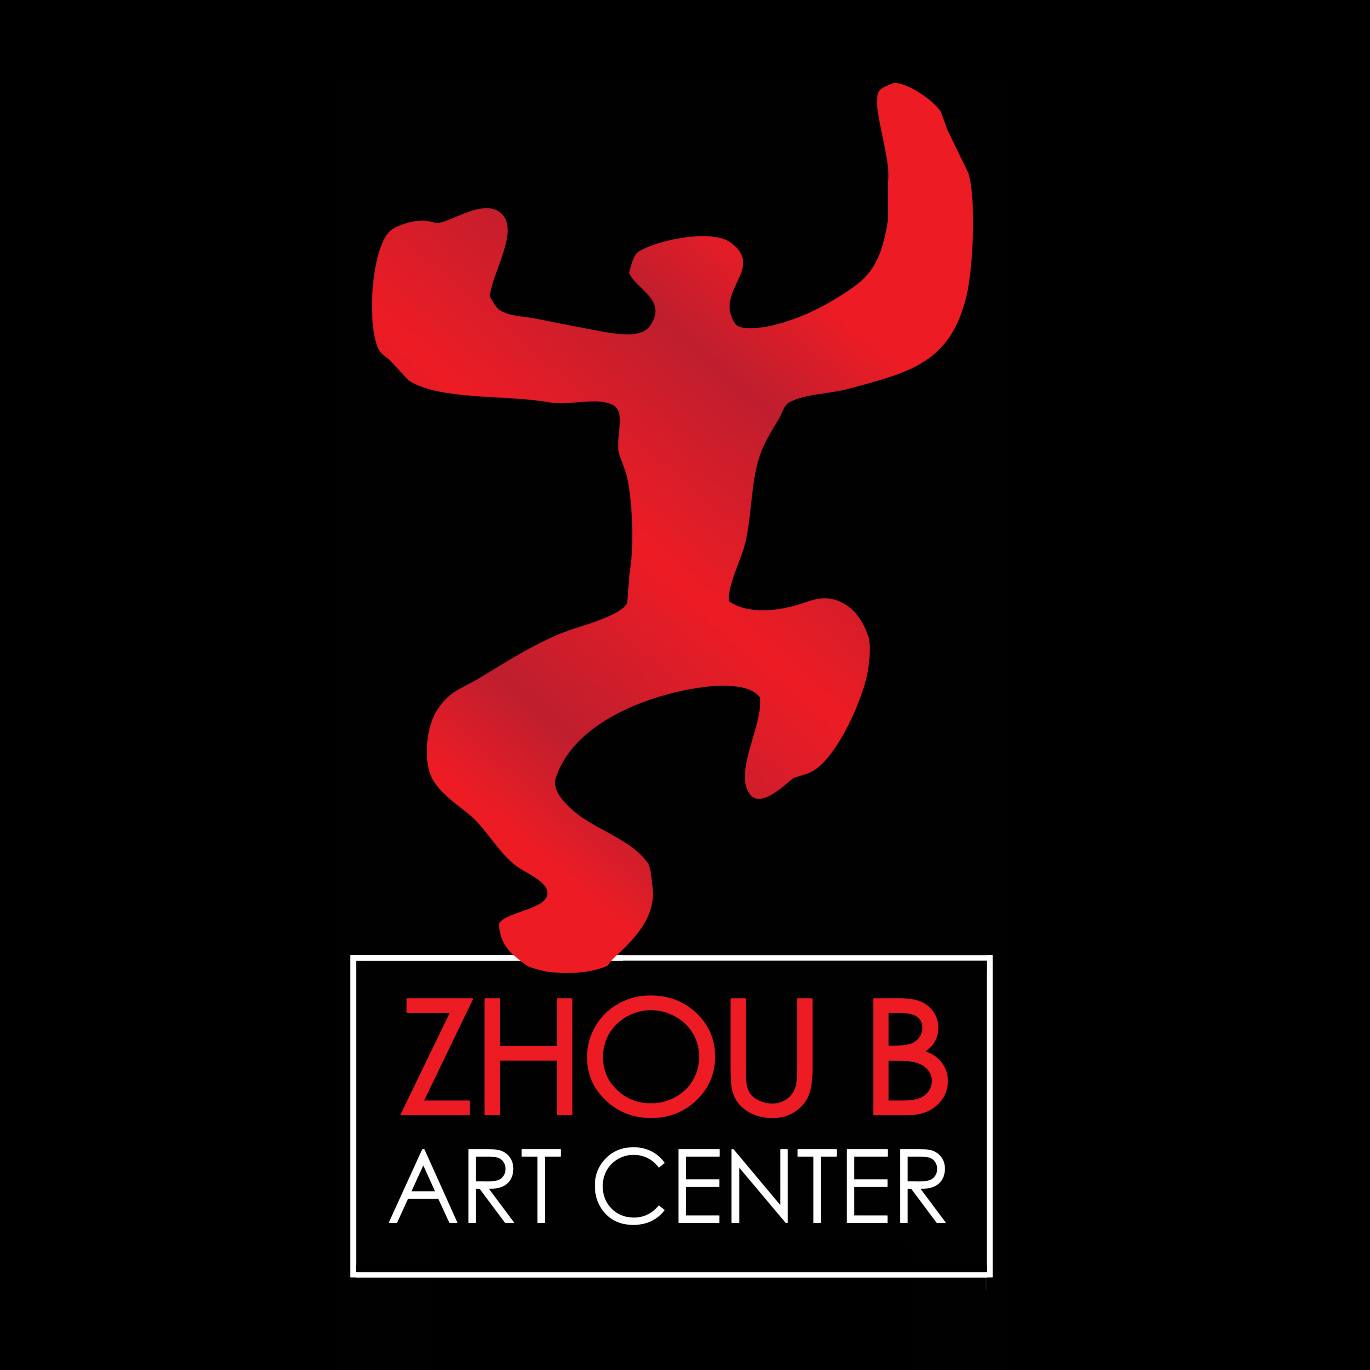 Business logo of Zhou B Art Center